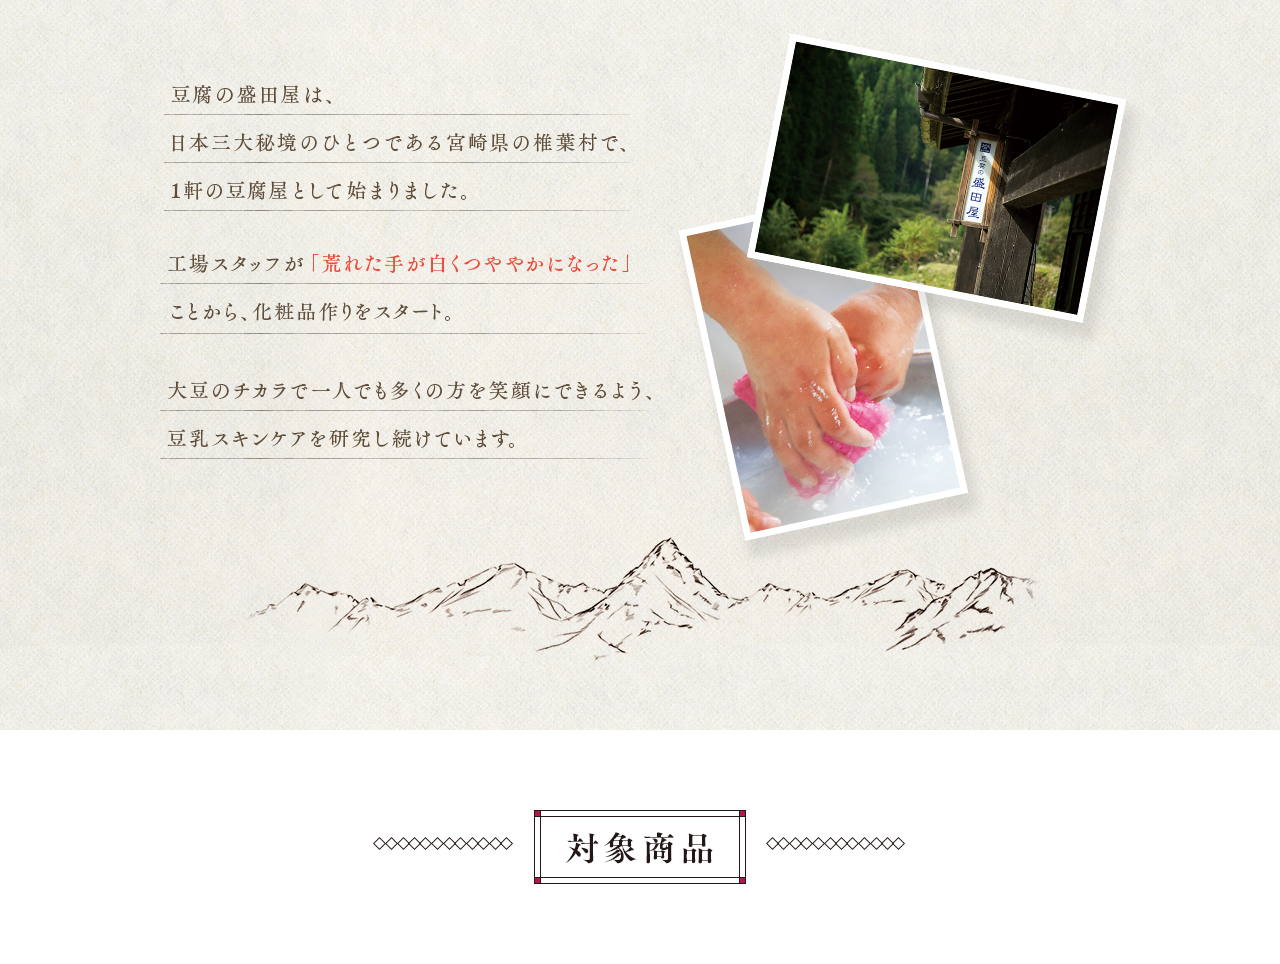 豆腐の盛田屋は、日本三大秘境のひとつである宮崎県の椎葉村で、1軒の豆腐屋として始まりました。